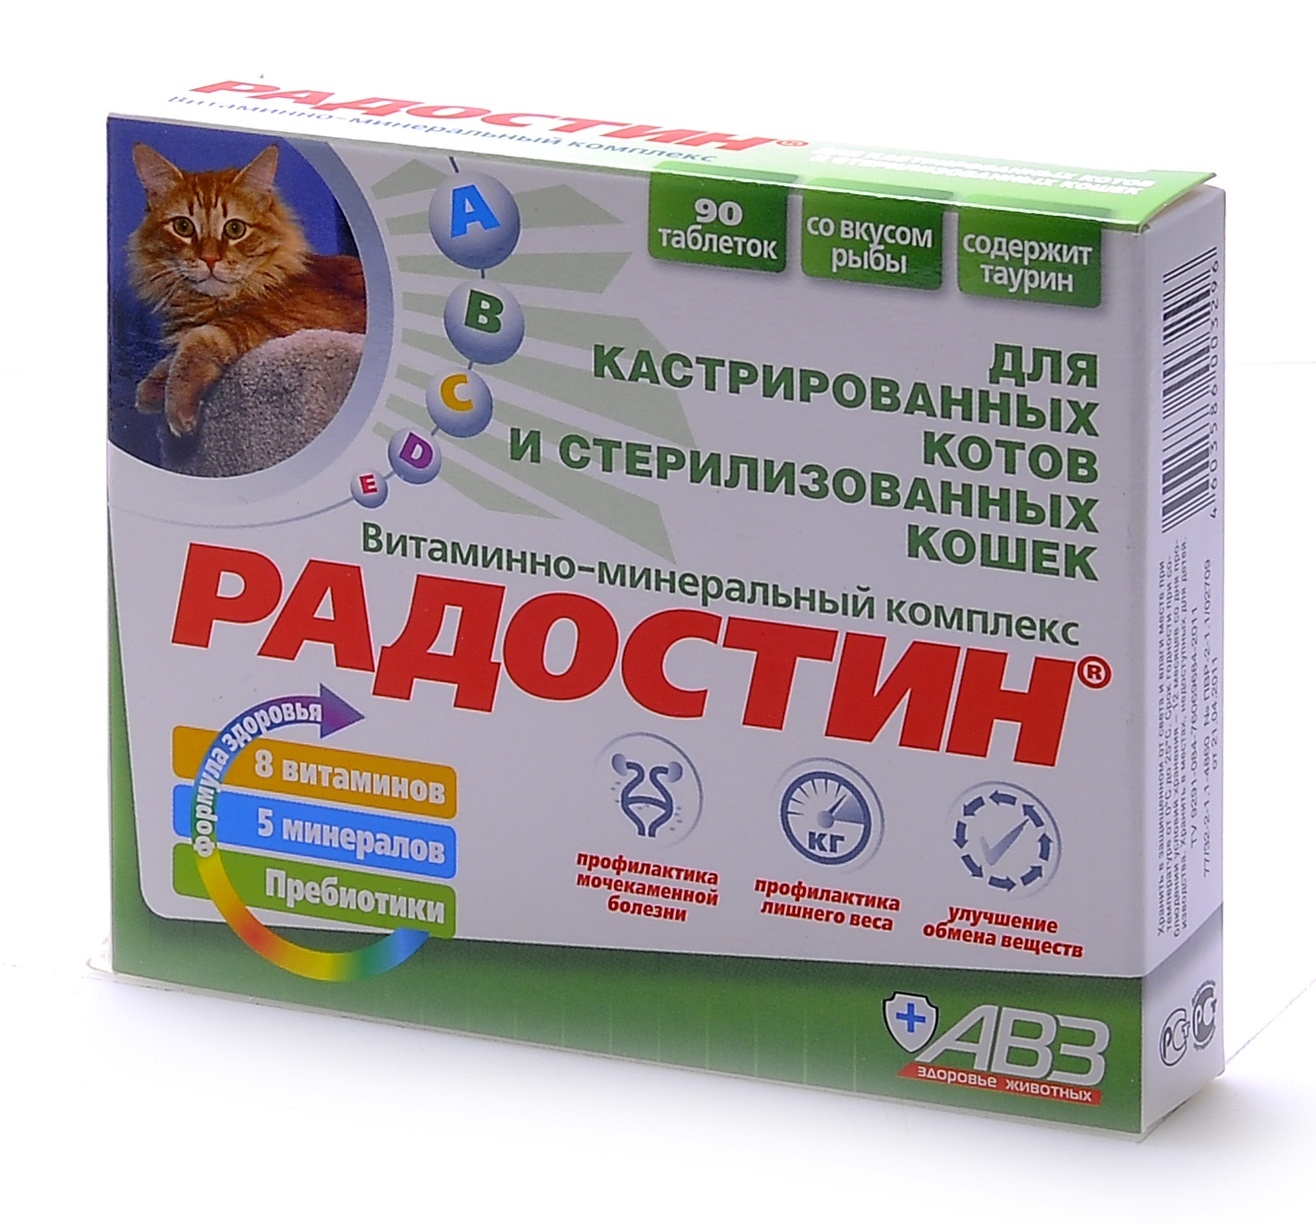 Агроветзащита Агроветзащита Радостин добавка витаминно-минеральная для кастрированных котов, 90 табл. (62 г)